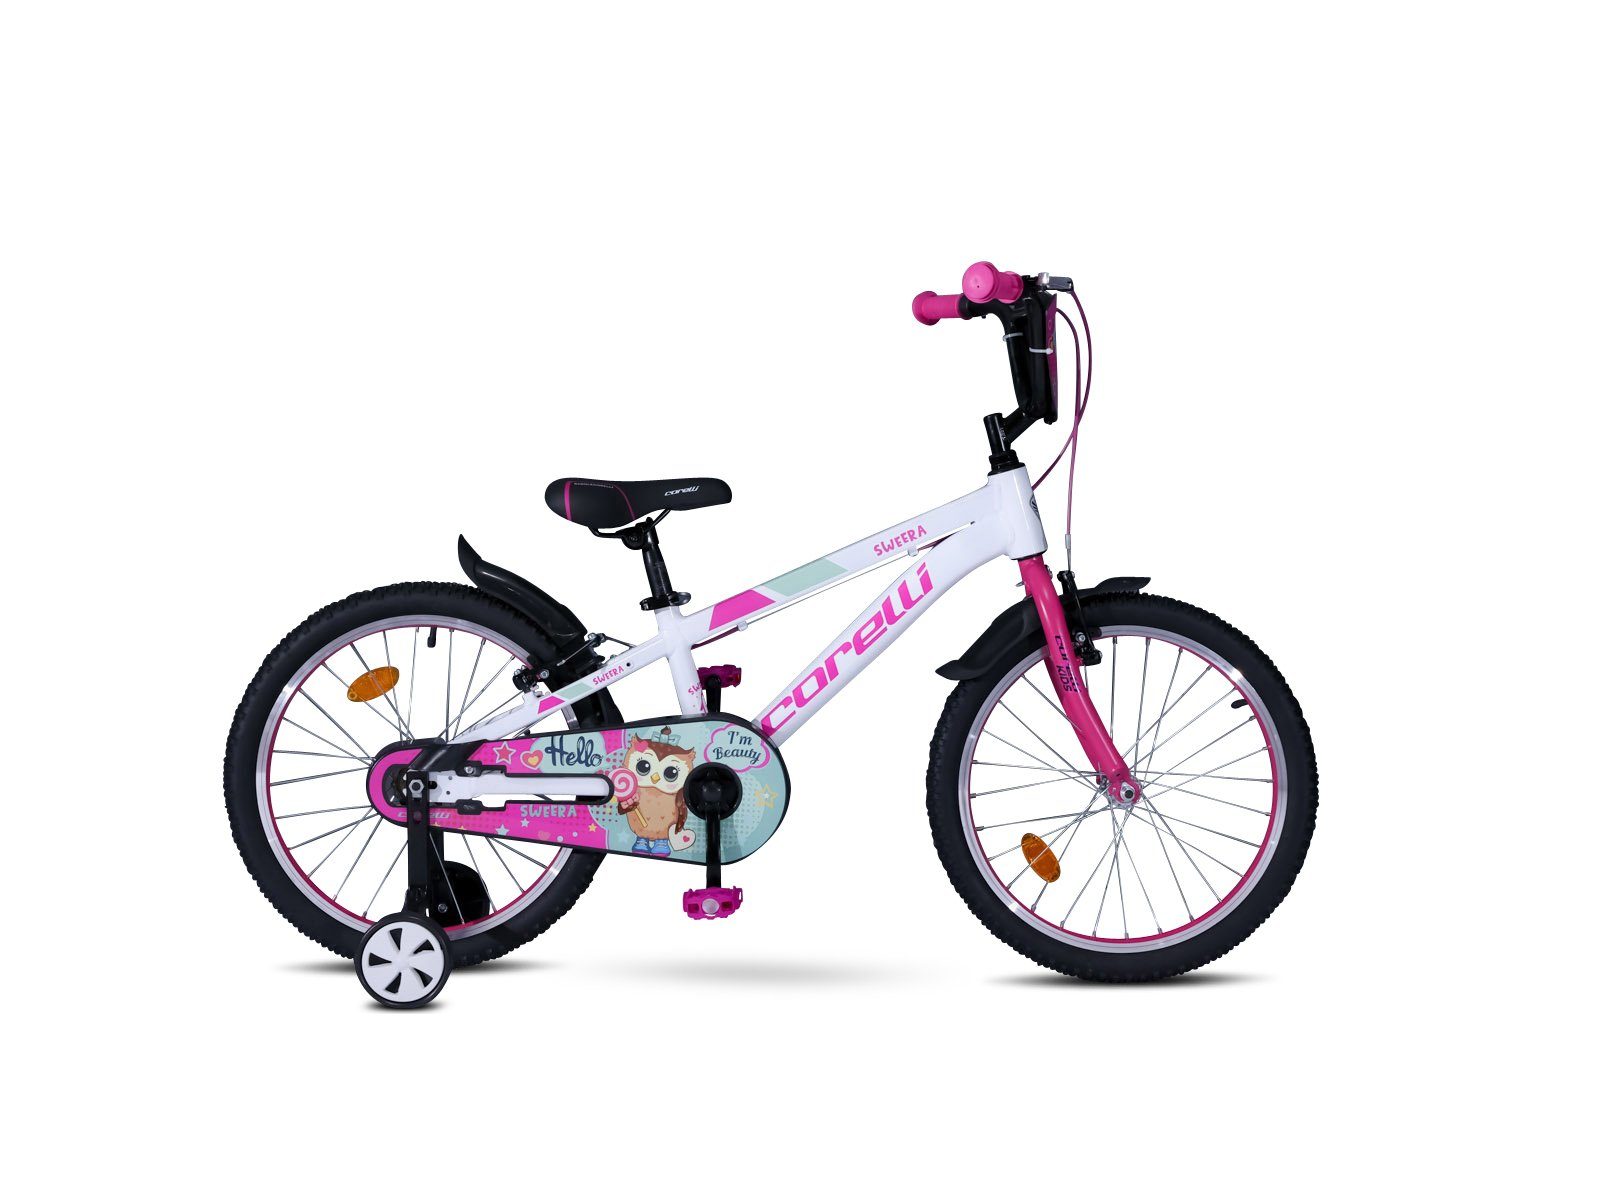 Kinderfahrrad 20 Zoll Weiß Fahrrad Mädchen Jungenfahrrad City Fahrrad Unisex 